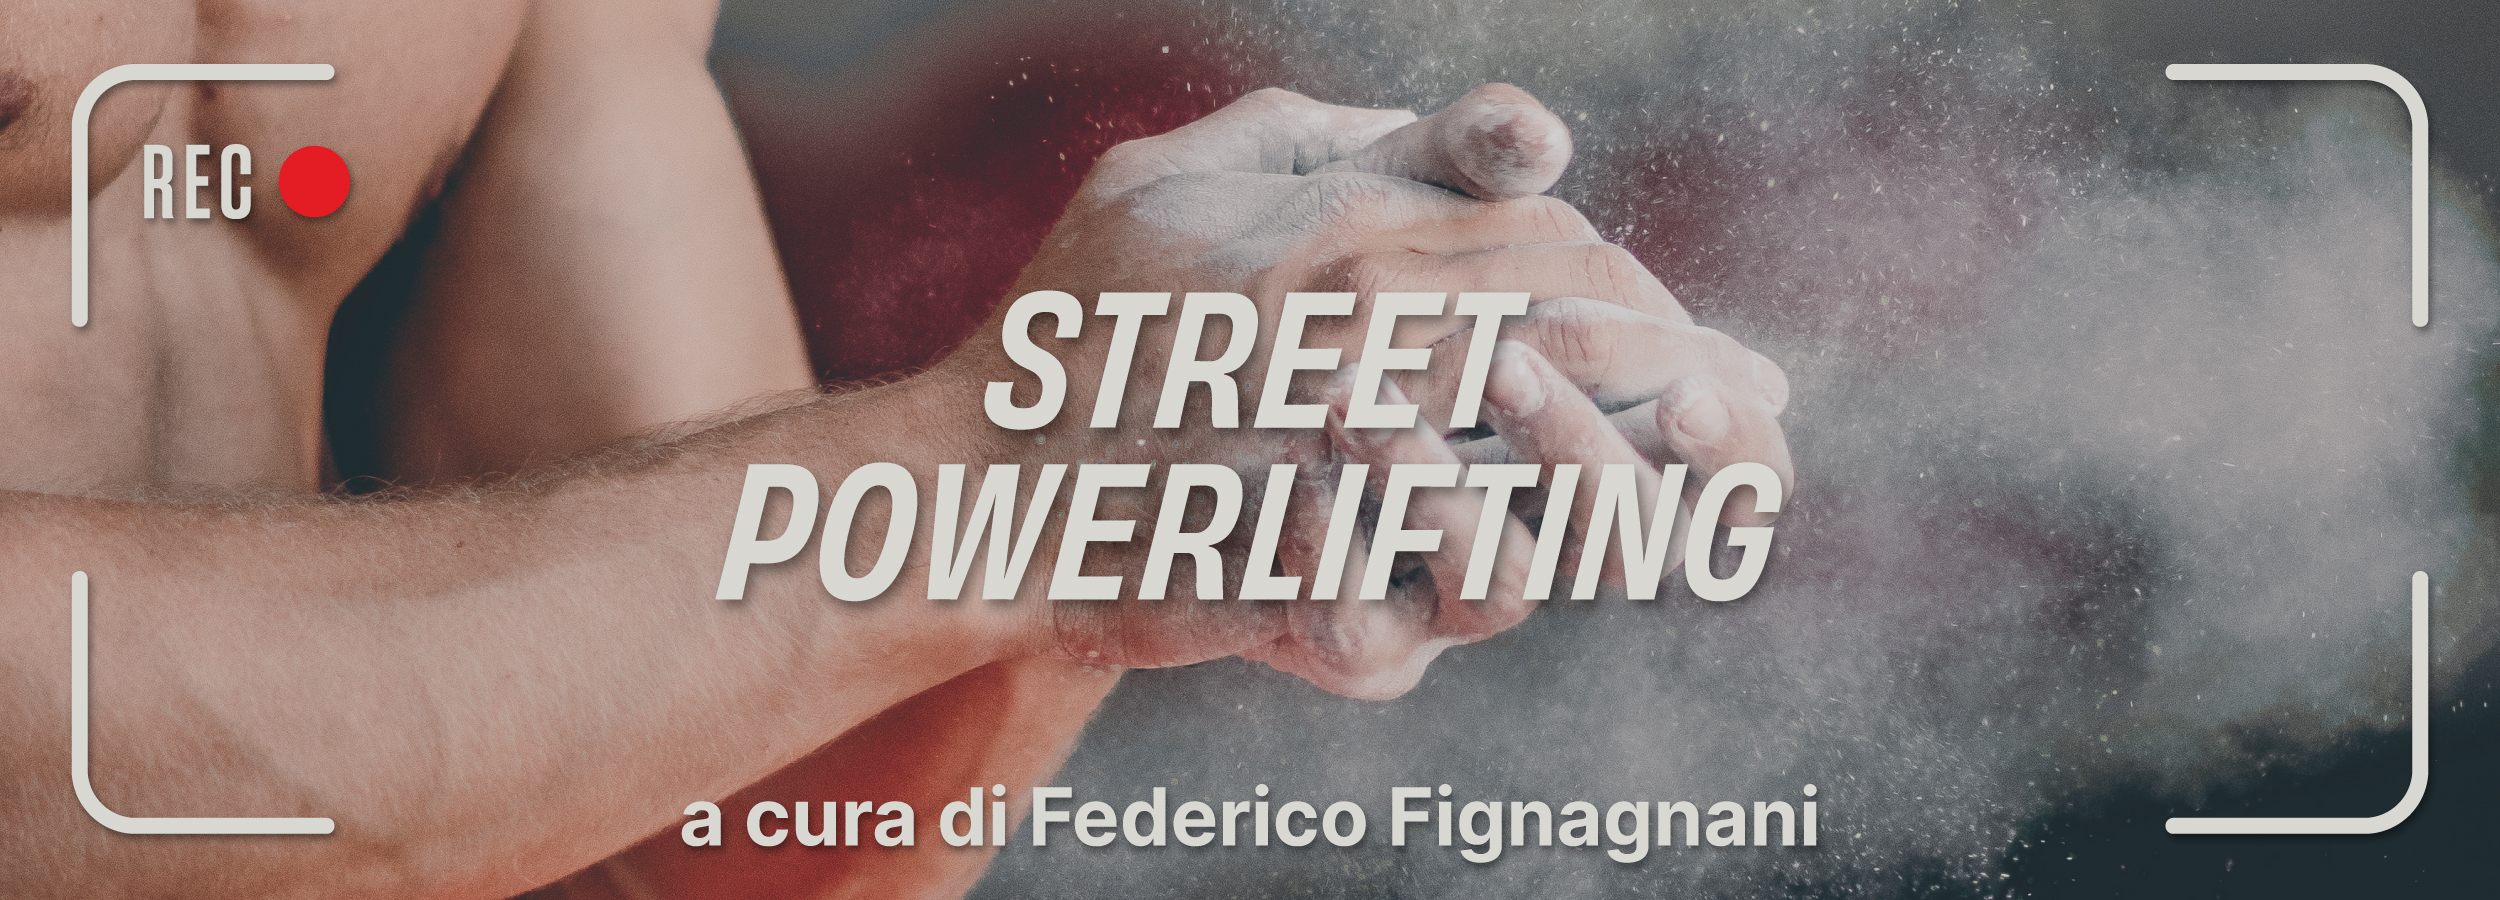 street powerlifting webinar